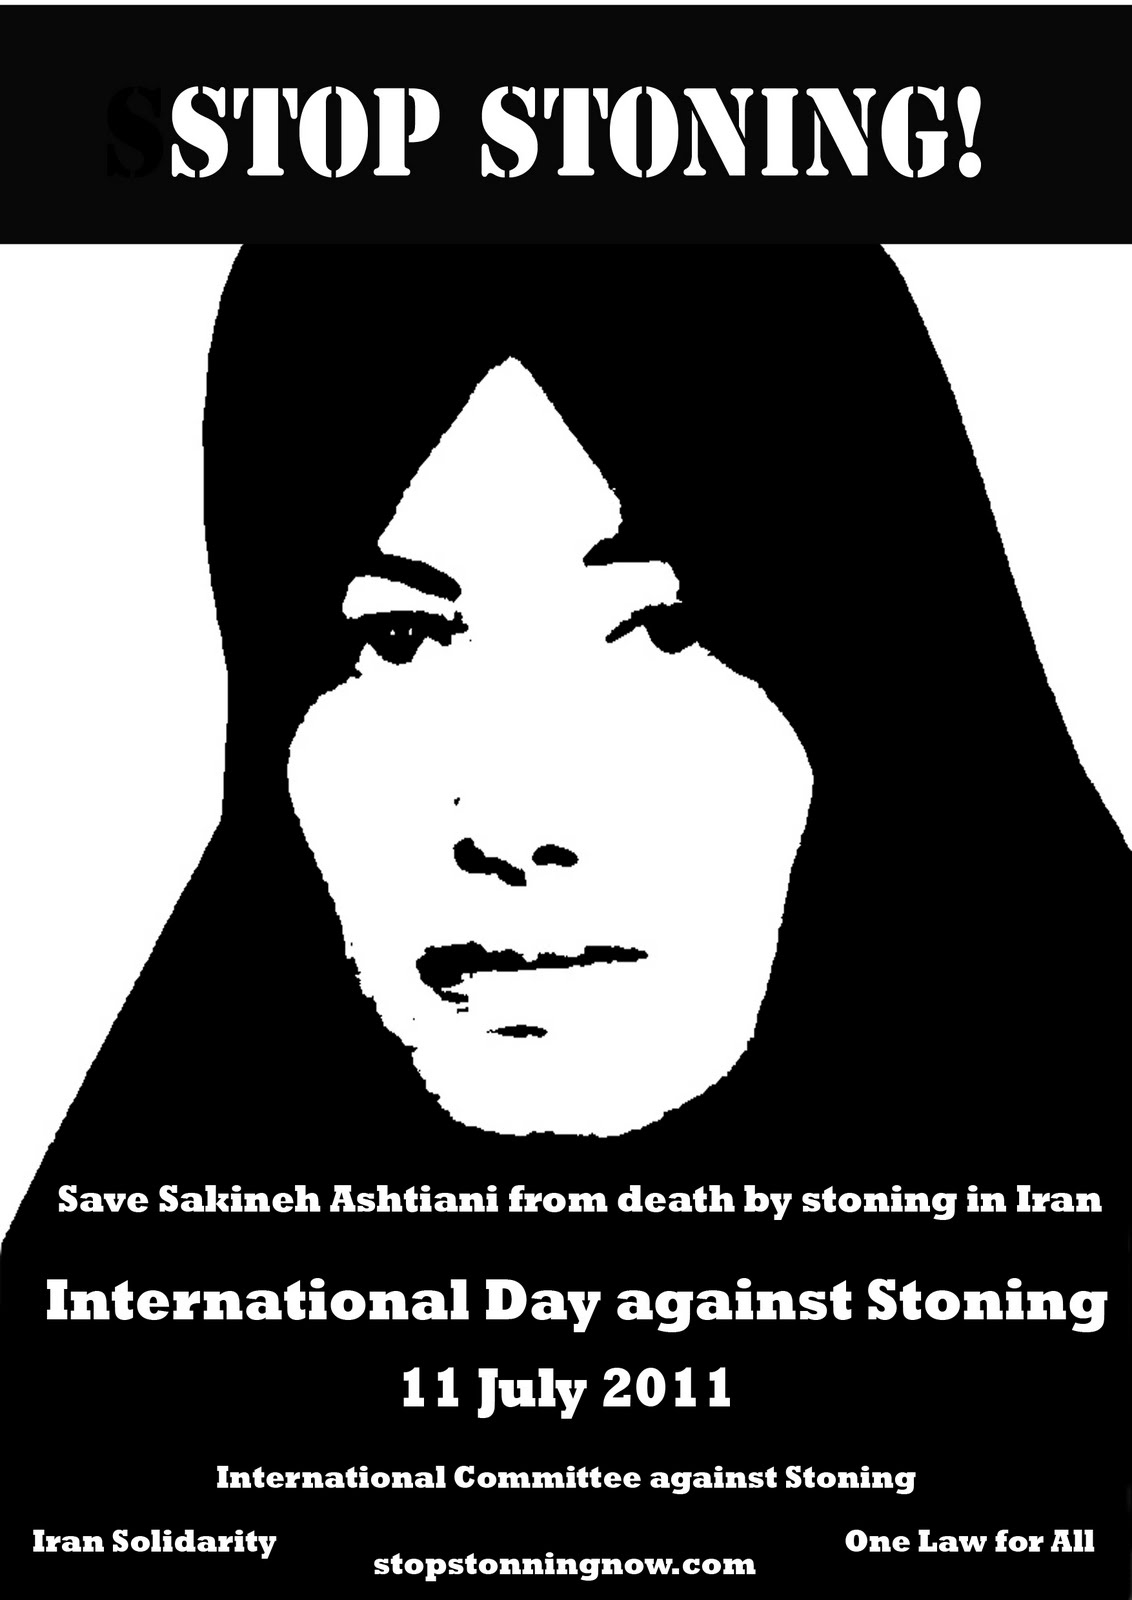 International Day against Stoning, Washtington Post